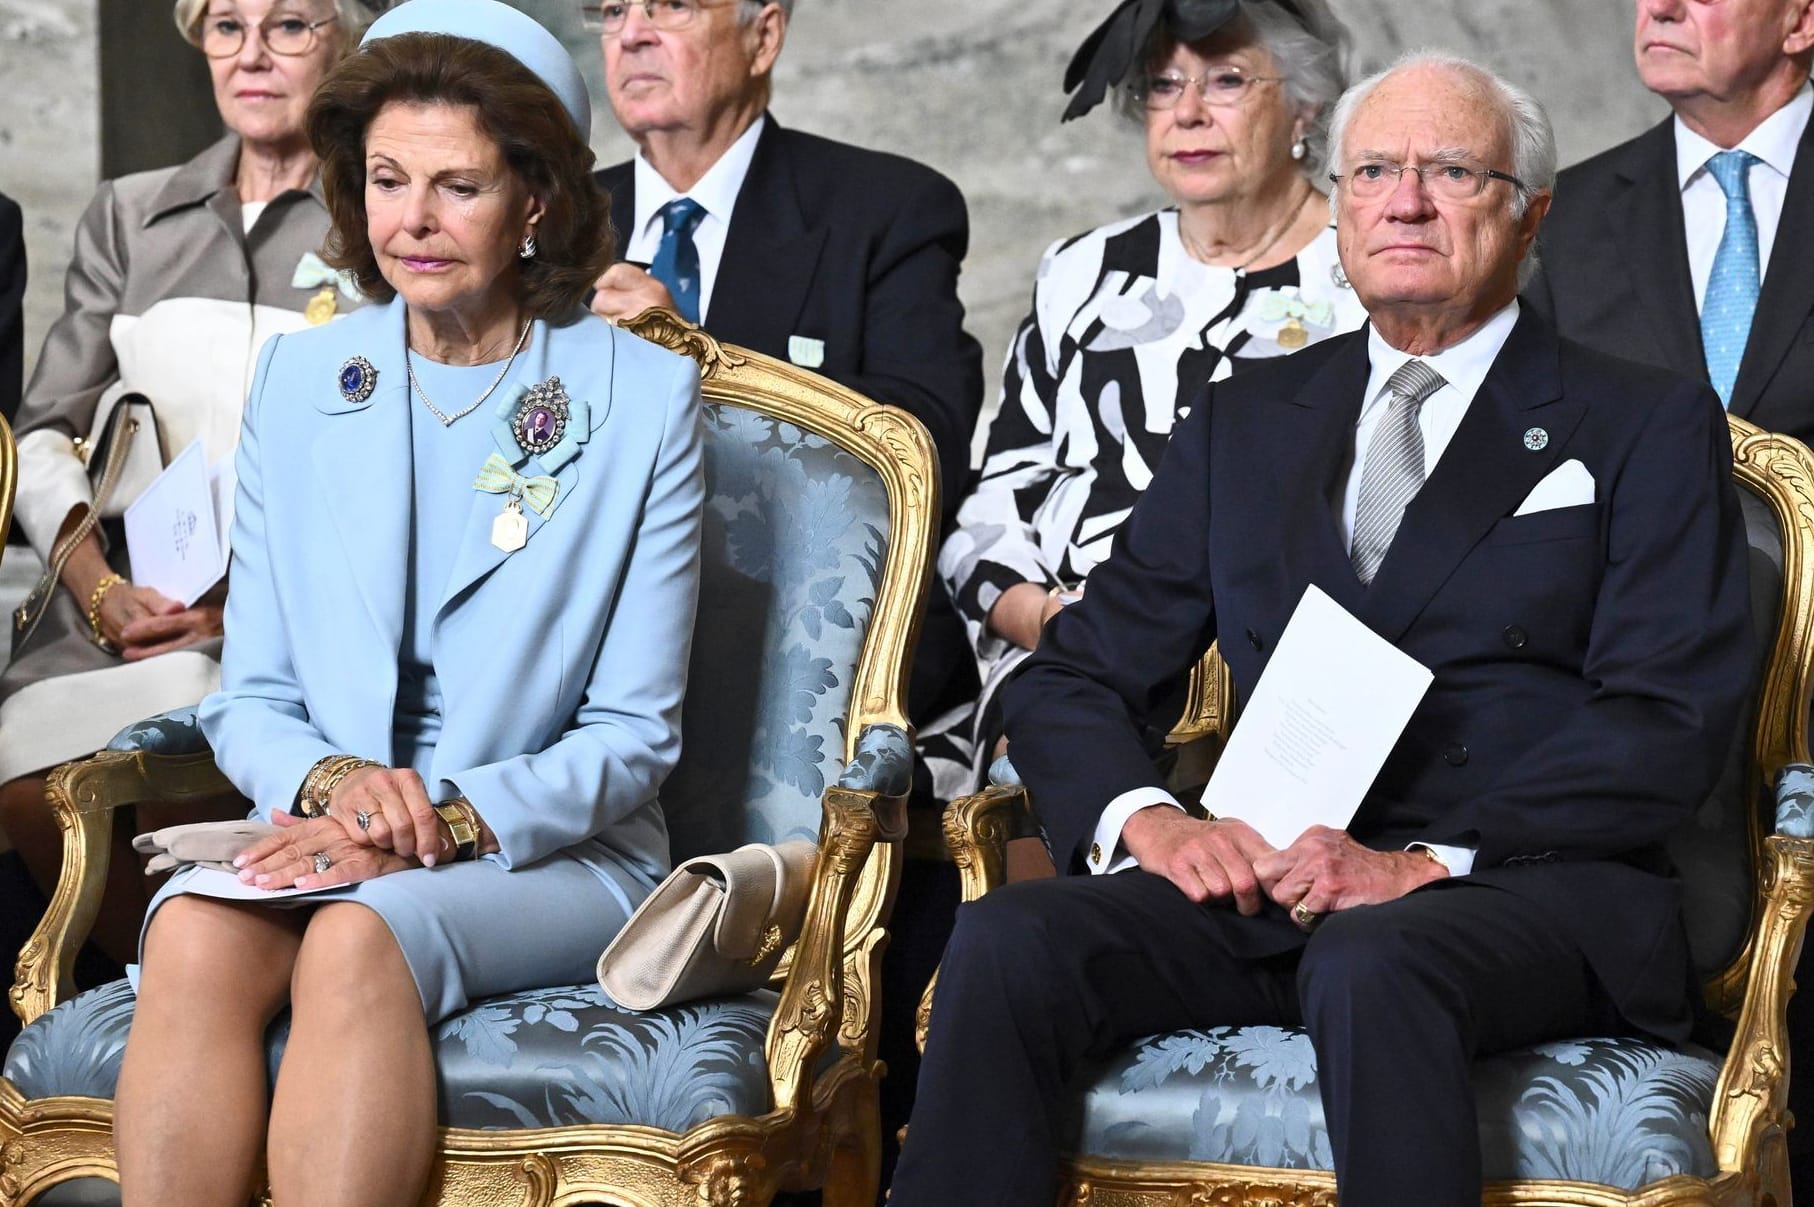 König Carl XVI. Gustaf von Schweden und seine Frau Königin Silvia von Schweden